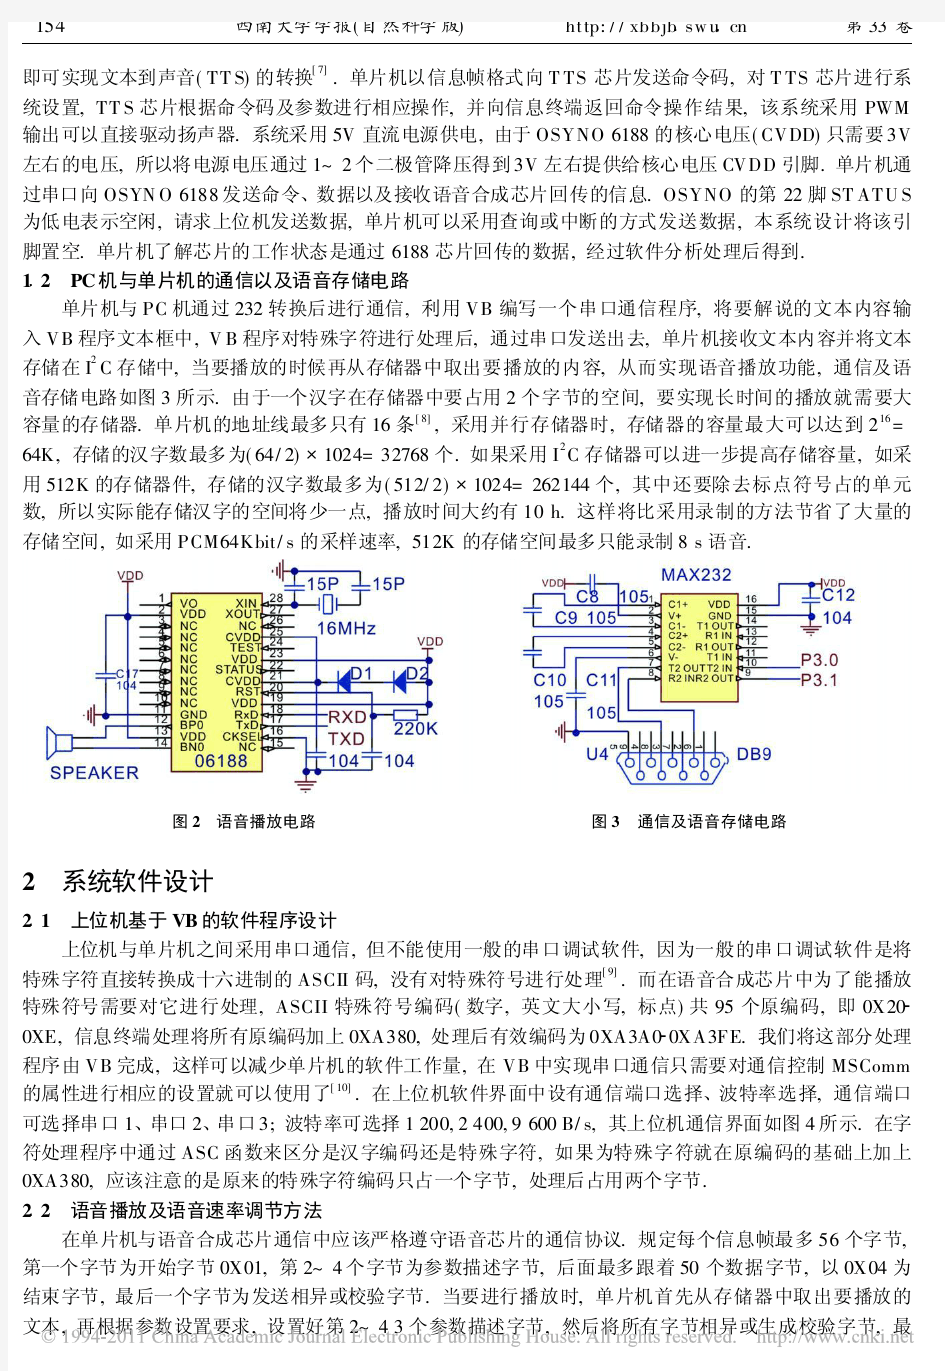 中文语音合成系统语音速率调节方法